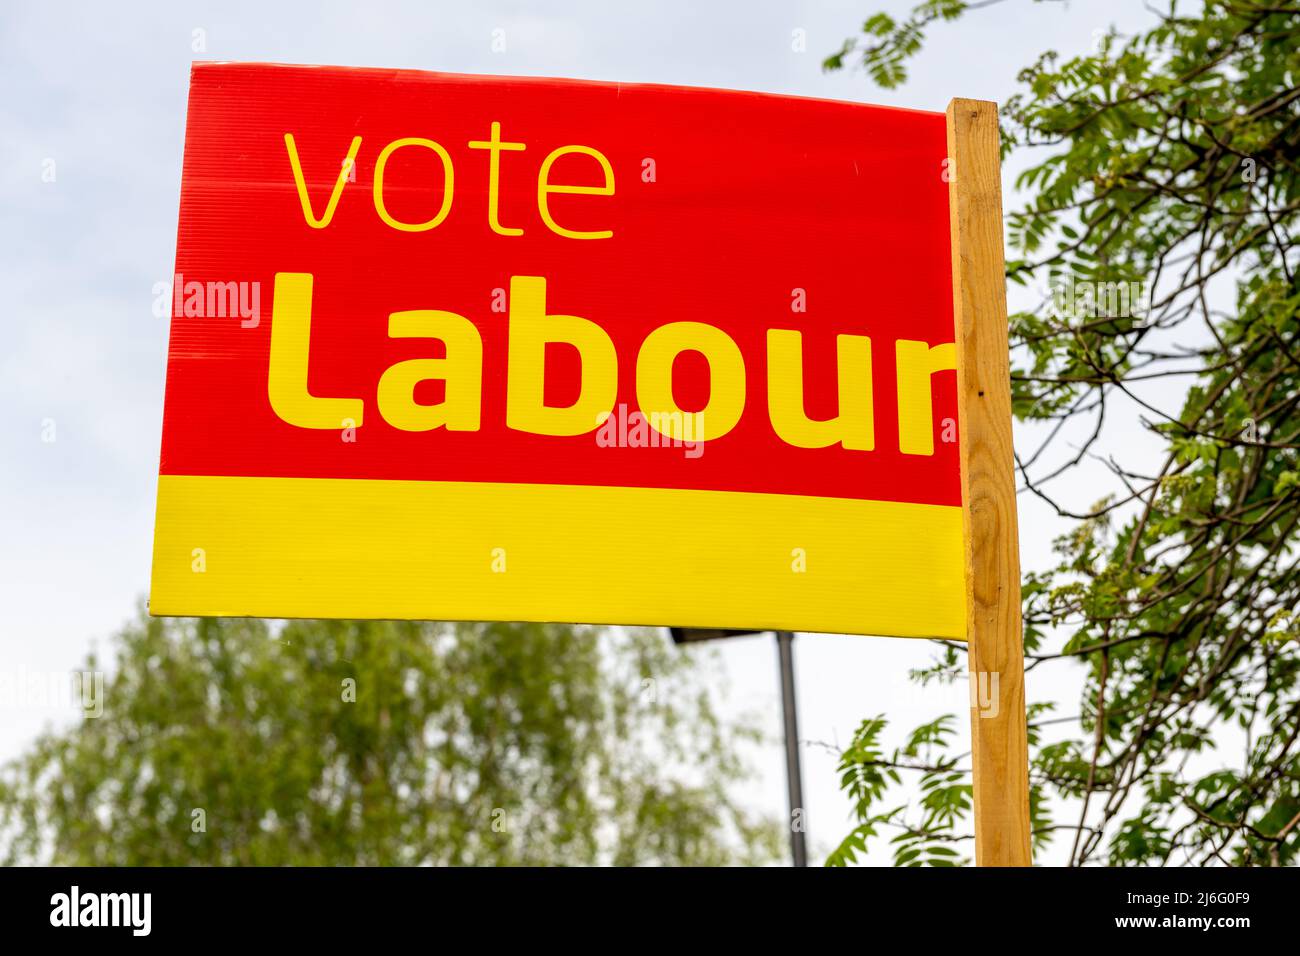 Londra. UK-o4.01.2022. Un cartello di voto dei laburisti fuori da una casa come parte della campagna politica nelle prossime elezioni del consiglio locale in Inghilterra. Foto Stock